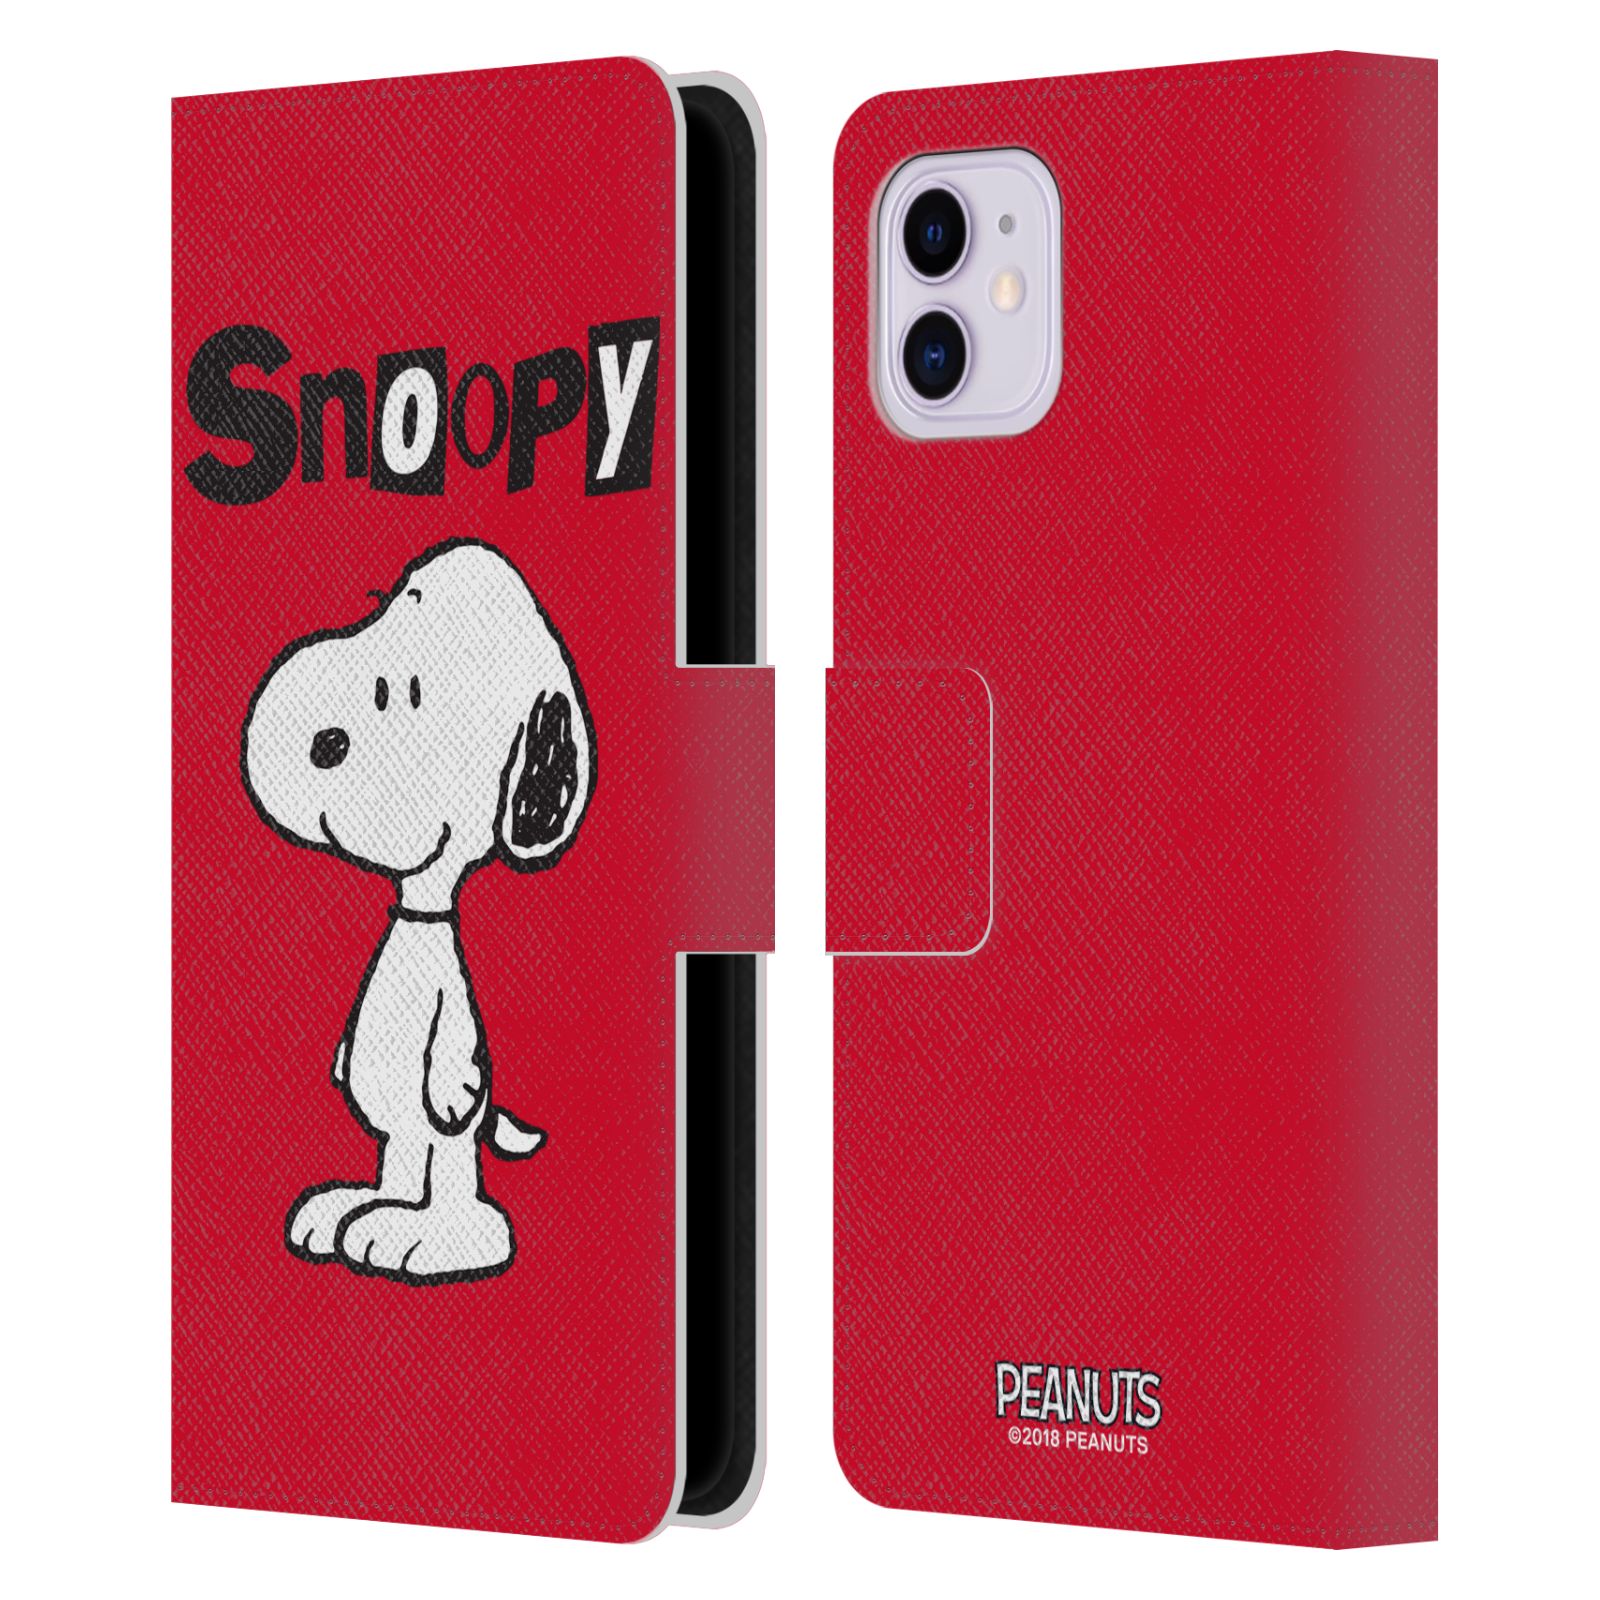 Pouzdro na mobil Apple Iphone 11 - HEAD CASE - Peanuts - Snoopy červená